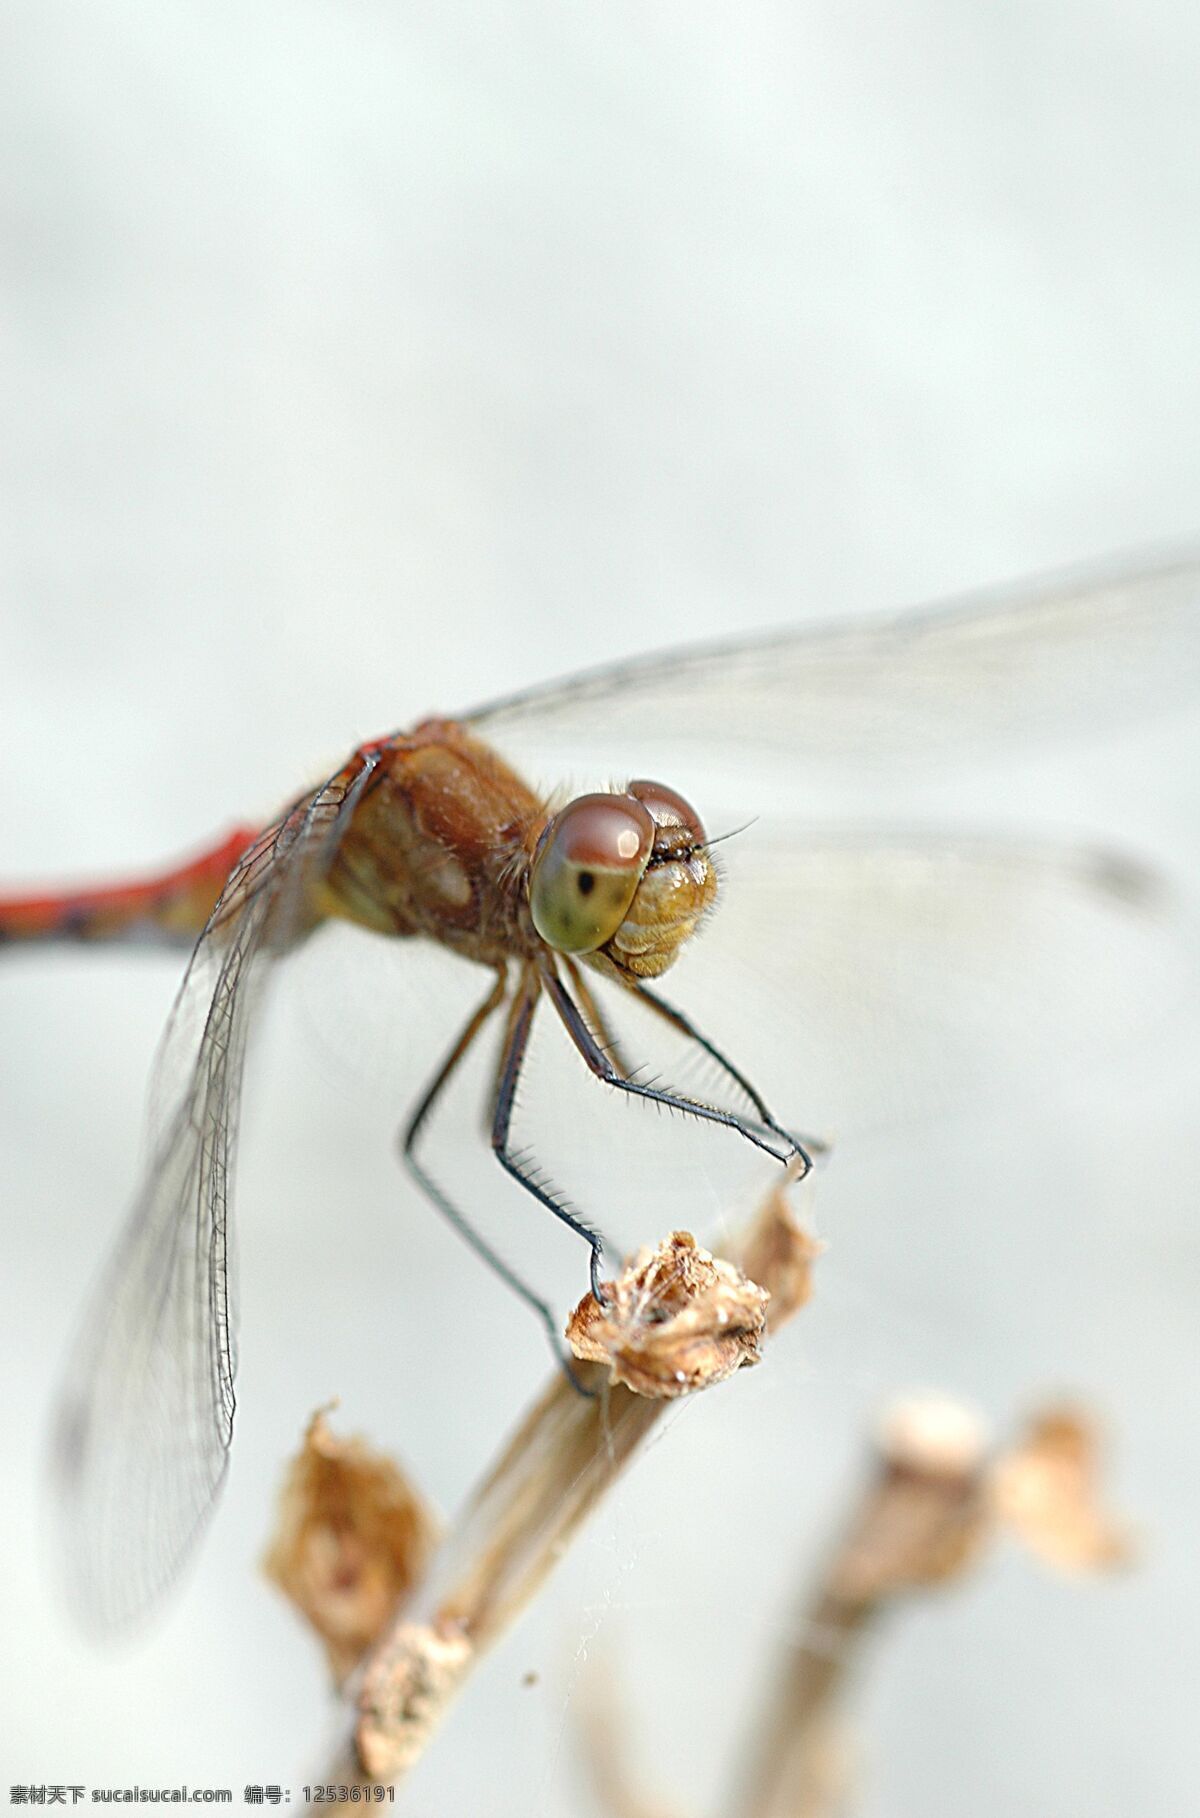 蜻蜓 昆虫 摄影图库 生物世界 特写 头部 枝叶 复眼 微观世界